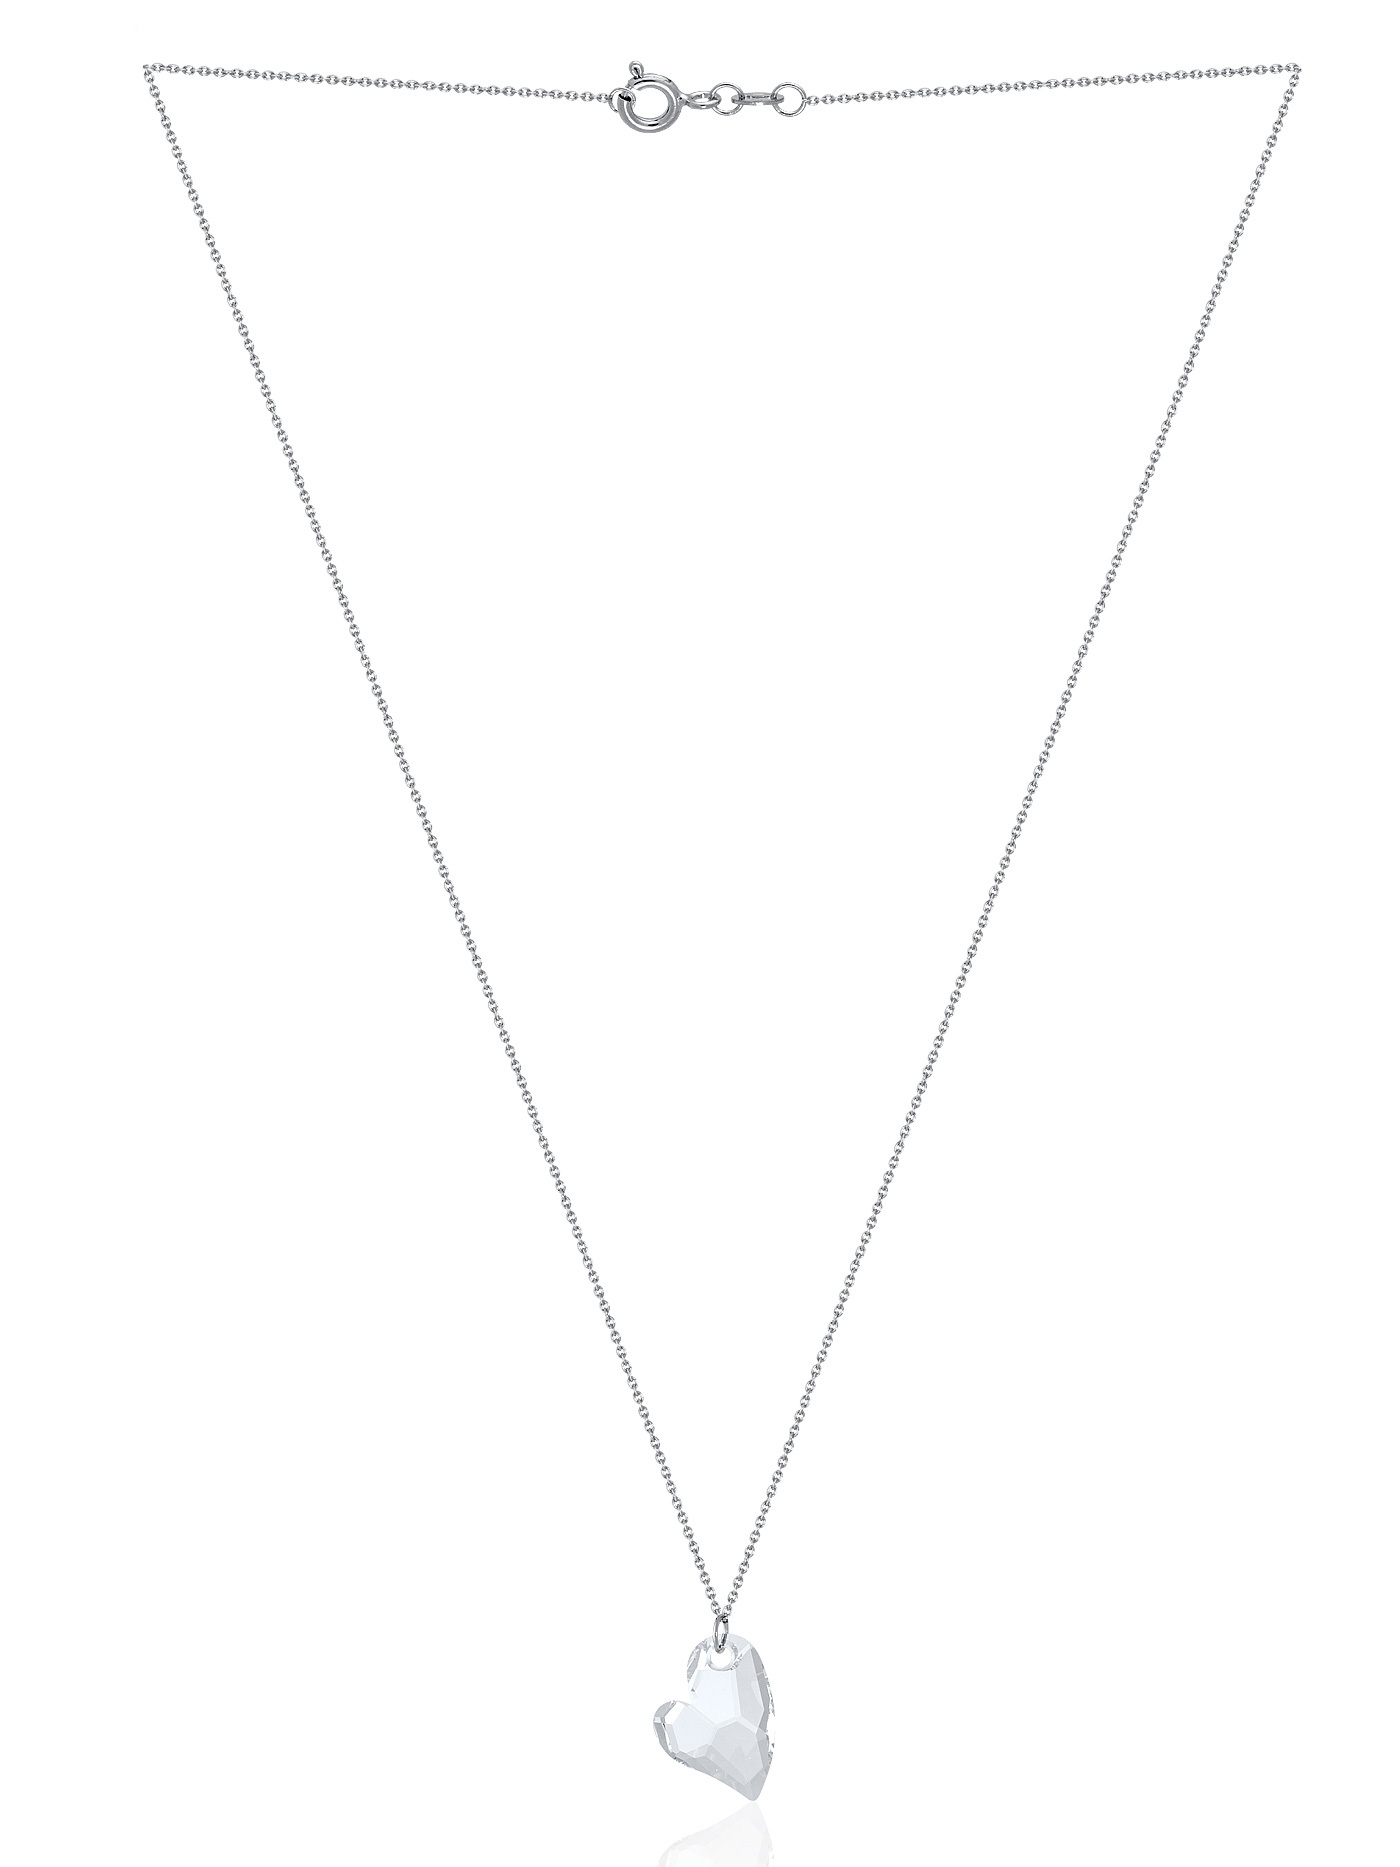 Ювелирная серебряная подвеска с кристаллом Swarovski Сердце